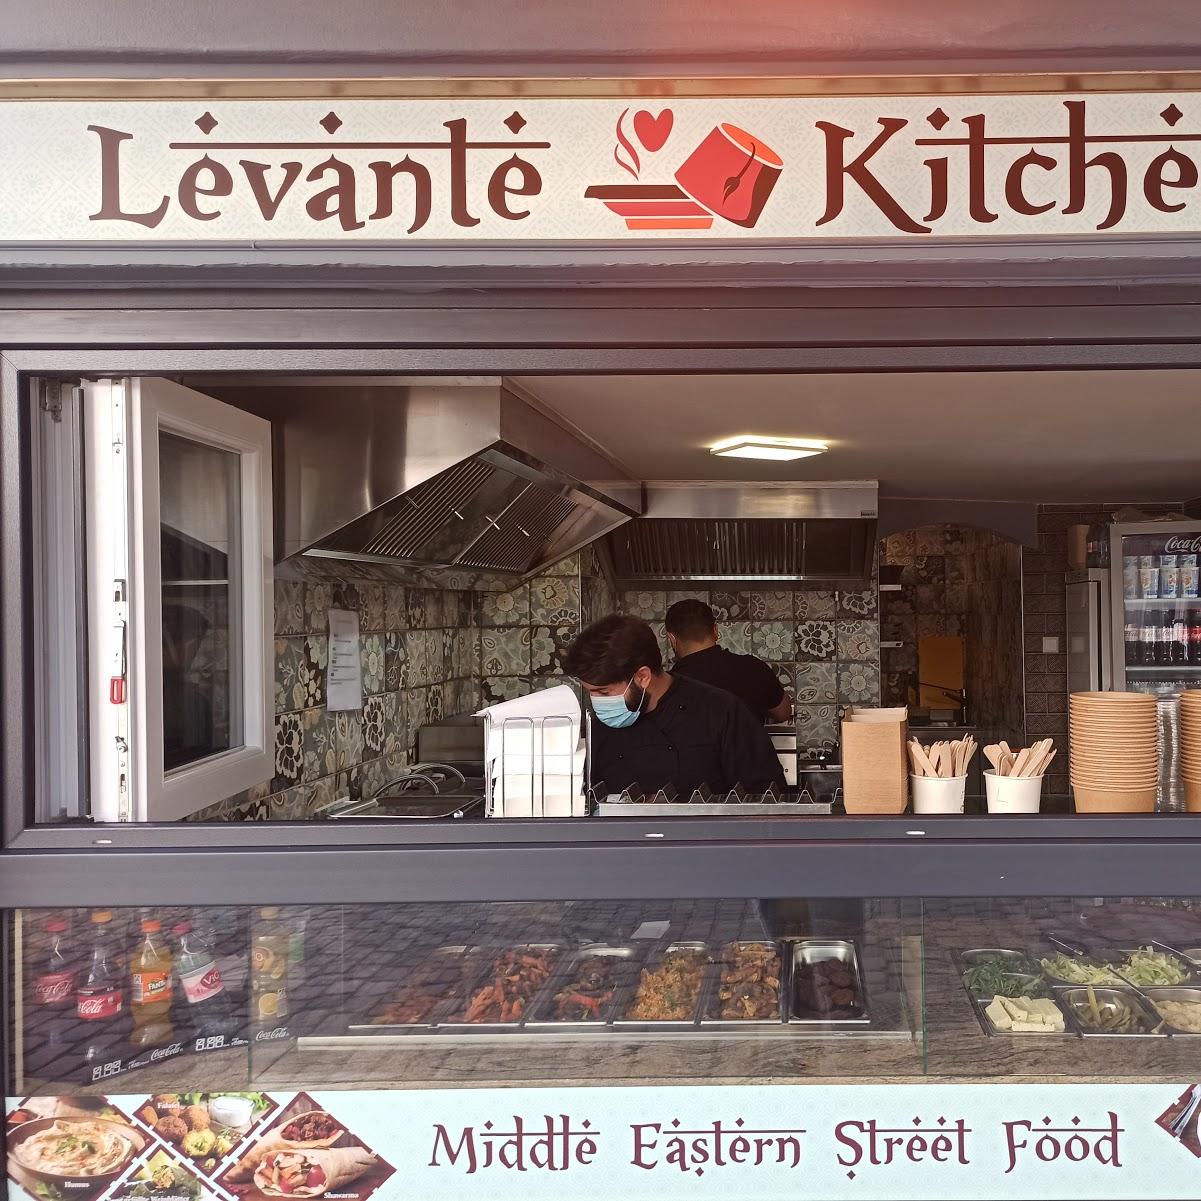 Restaurant "Levante Kitchen" in Freiburg im Breisgau